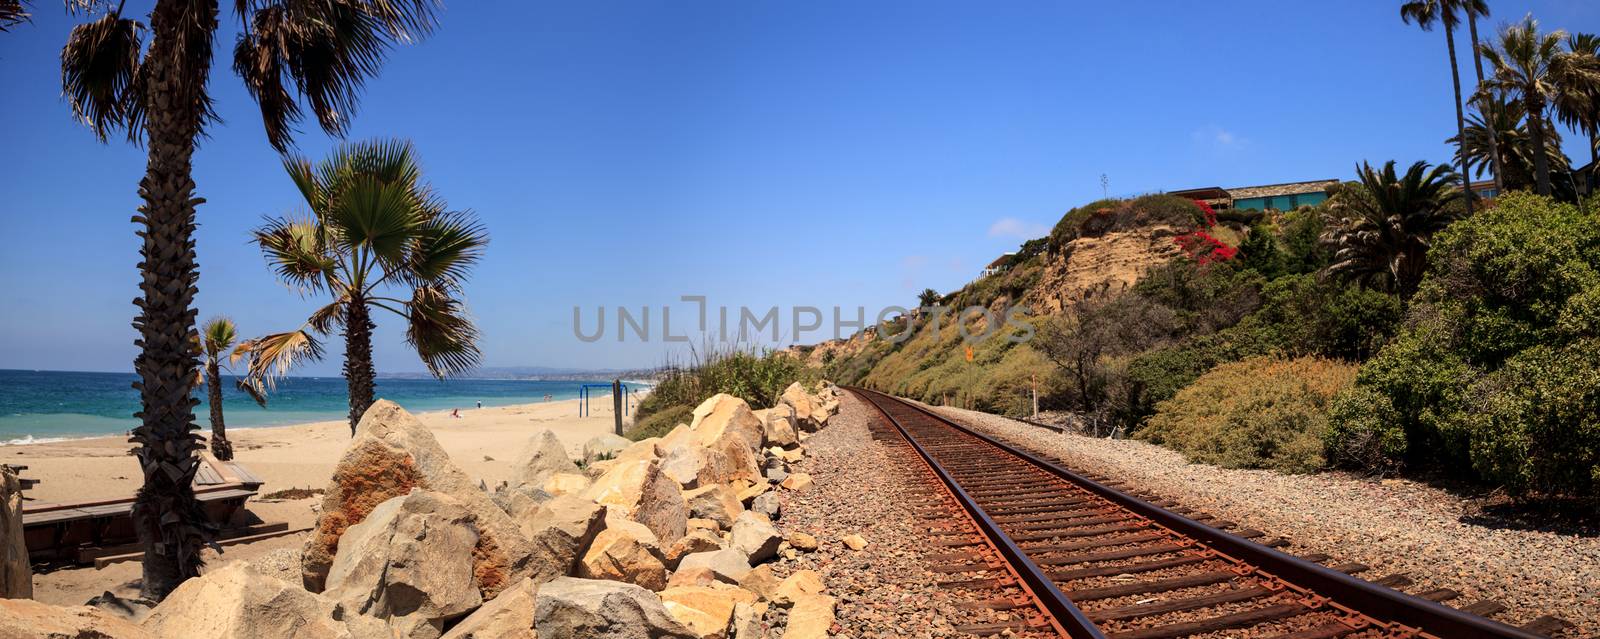 Train tracks run through San Clemente State Beach  by steffstarr